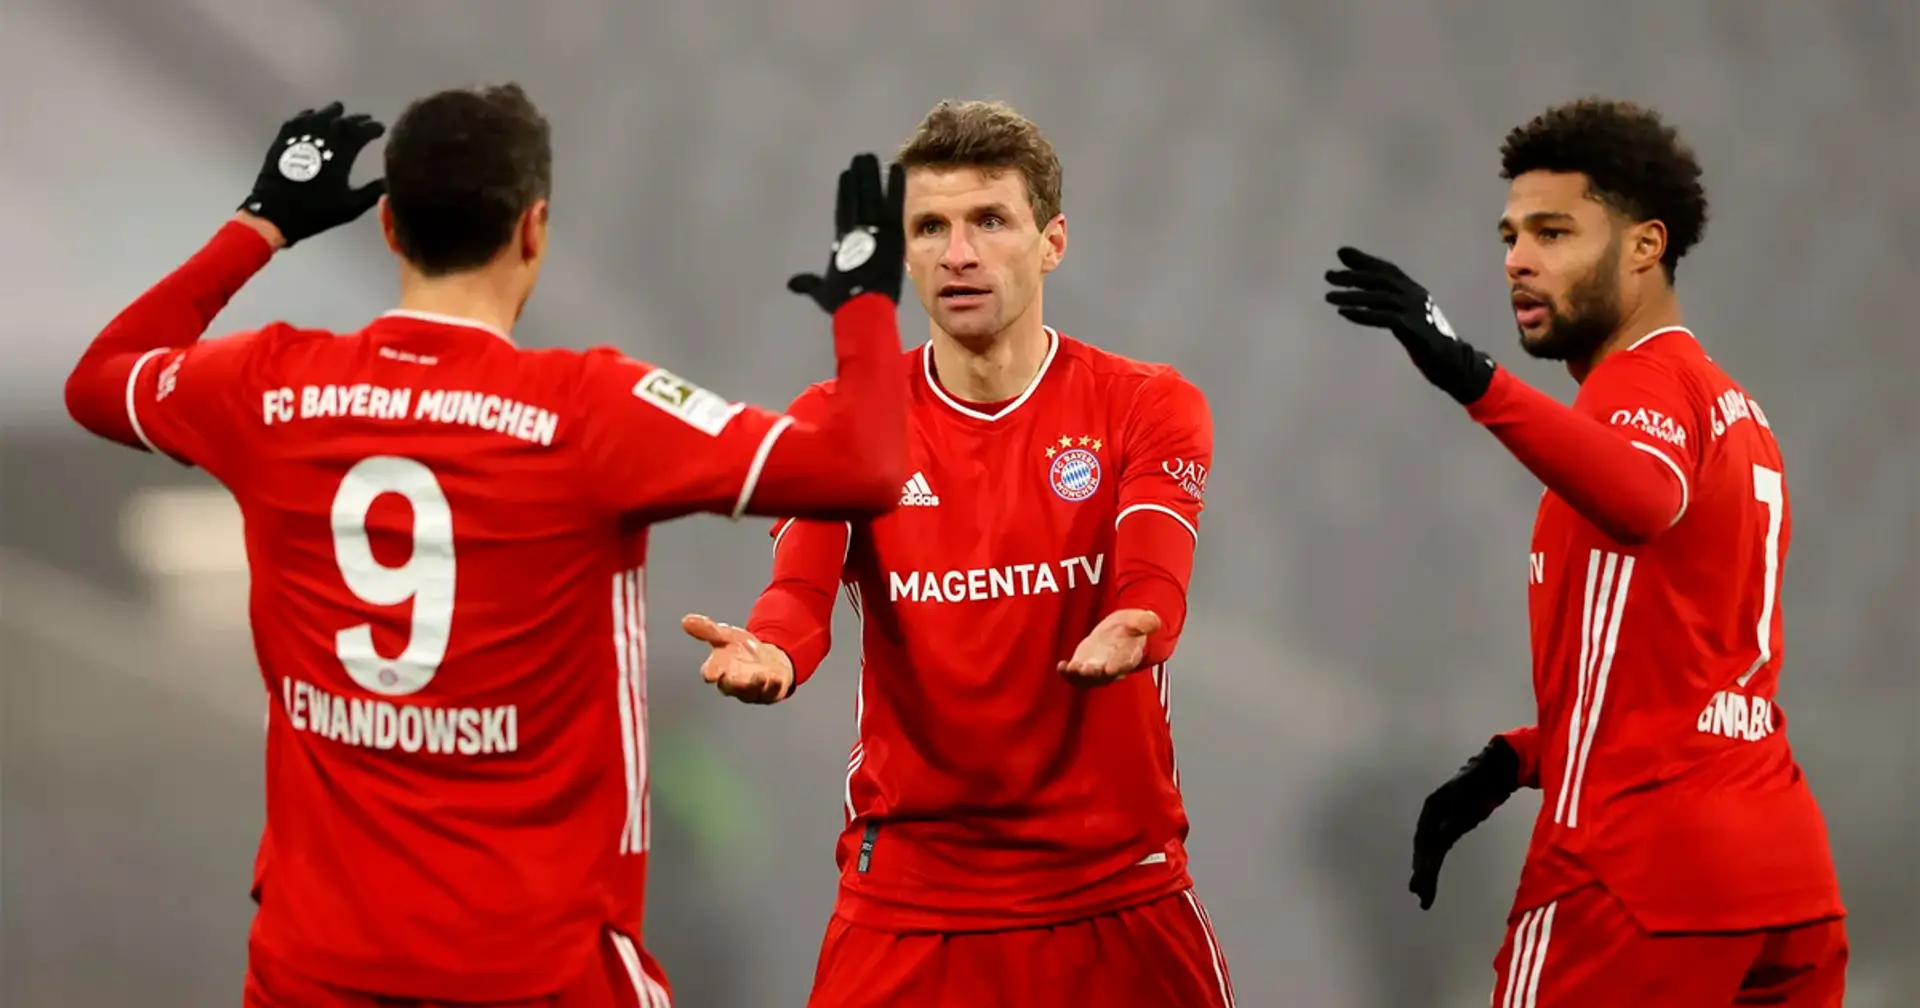 Bayern-Kader ab der nächsten Saison - Fantasie und/oder Wunschgedanke